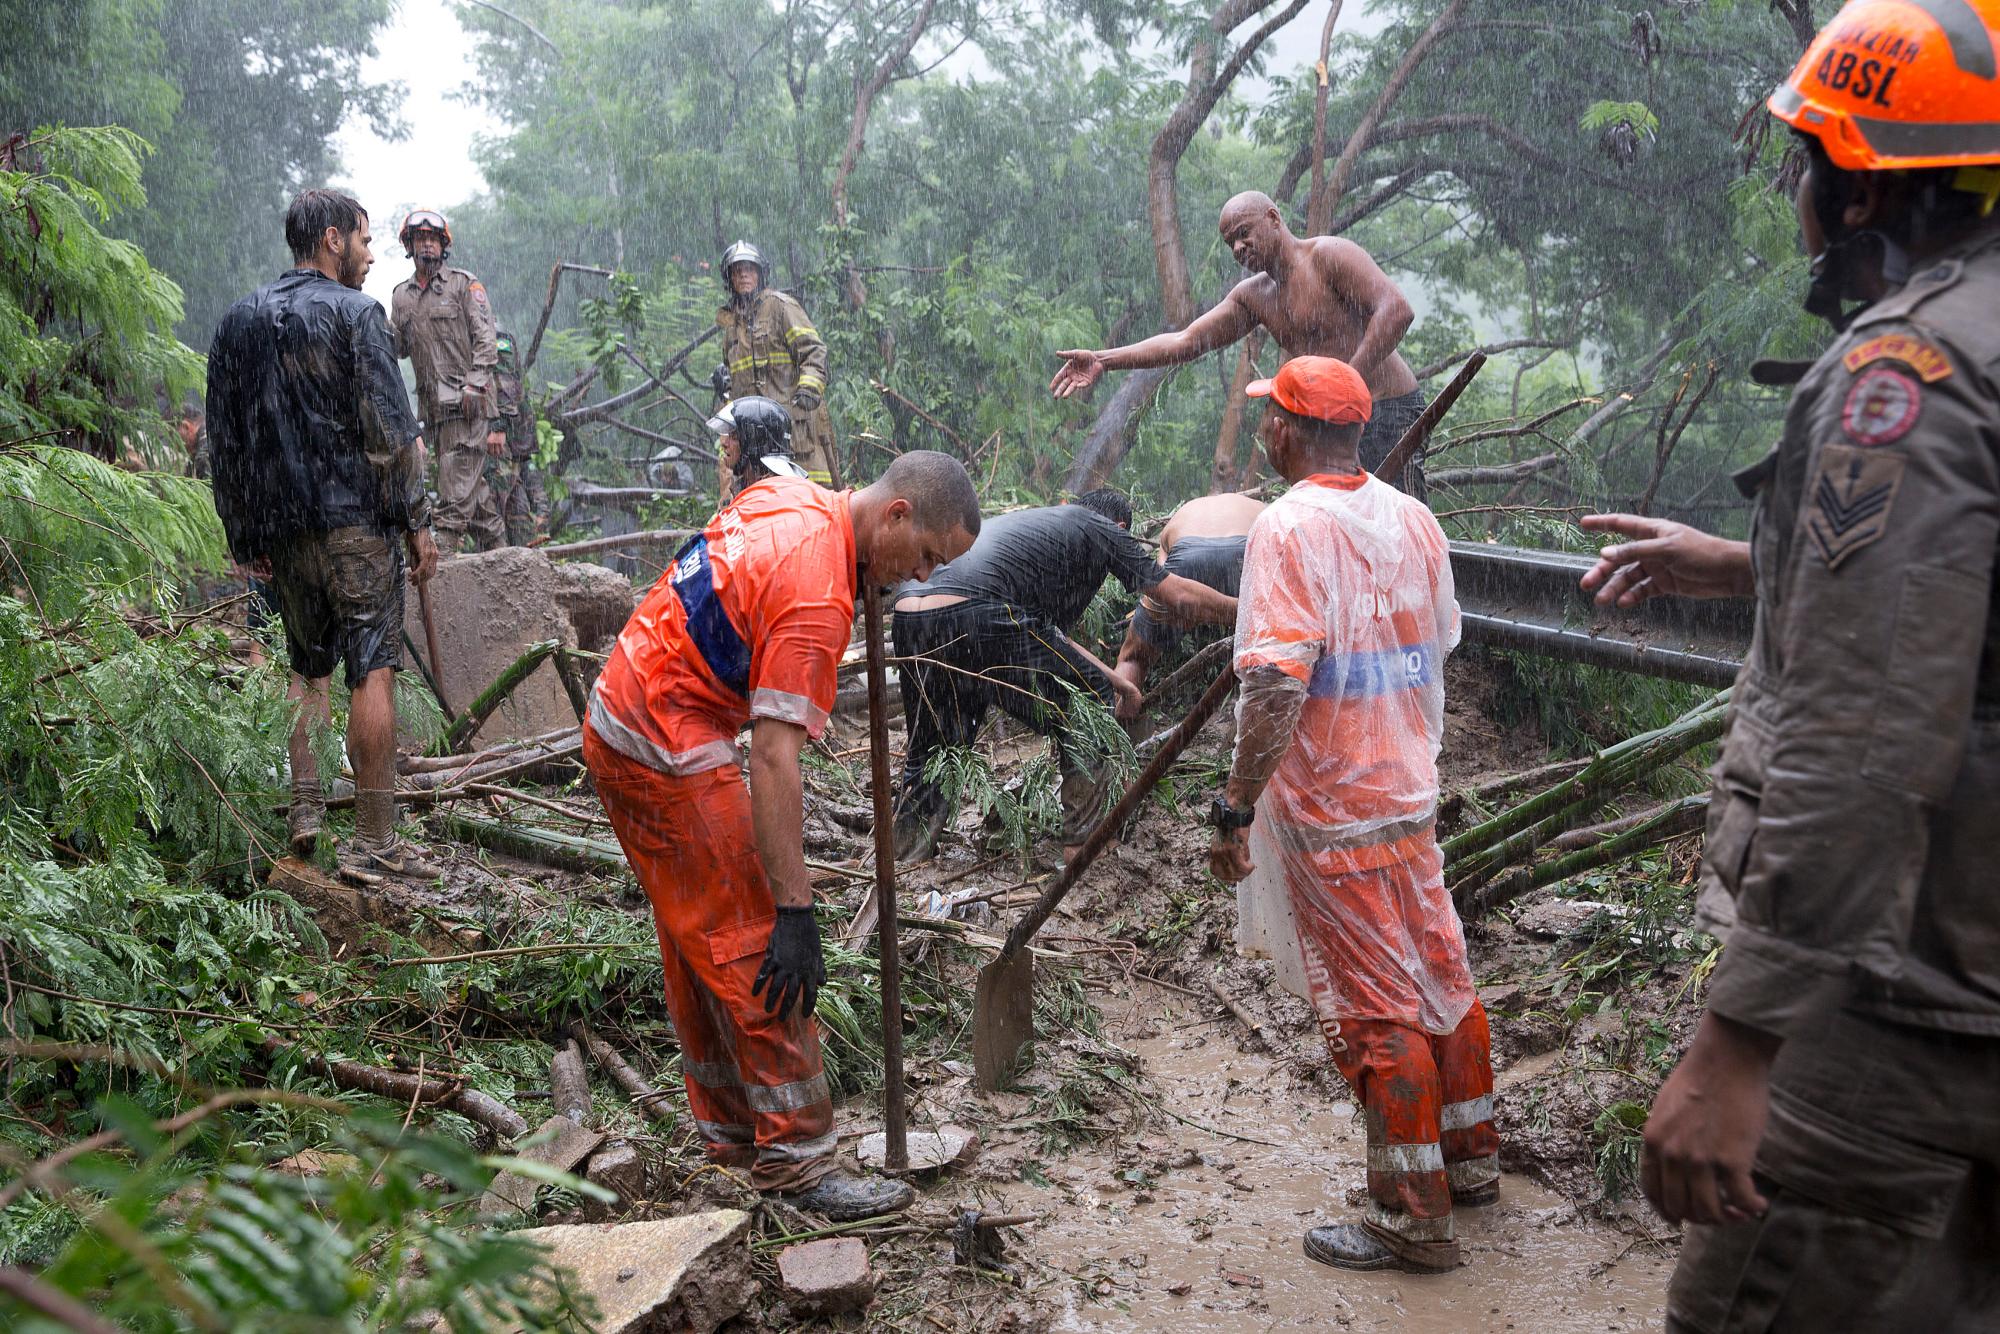 Rescatistas y residentes buscan sobrevivientes en un sitio donde los vehículos fueron enterrados en lodo y arrancados de árboles después de fuertes lluvias en Río de Janeiro, Brasil, el martes 9 de abril de 2019. 